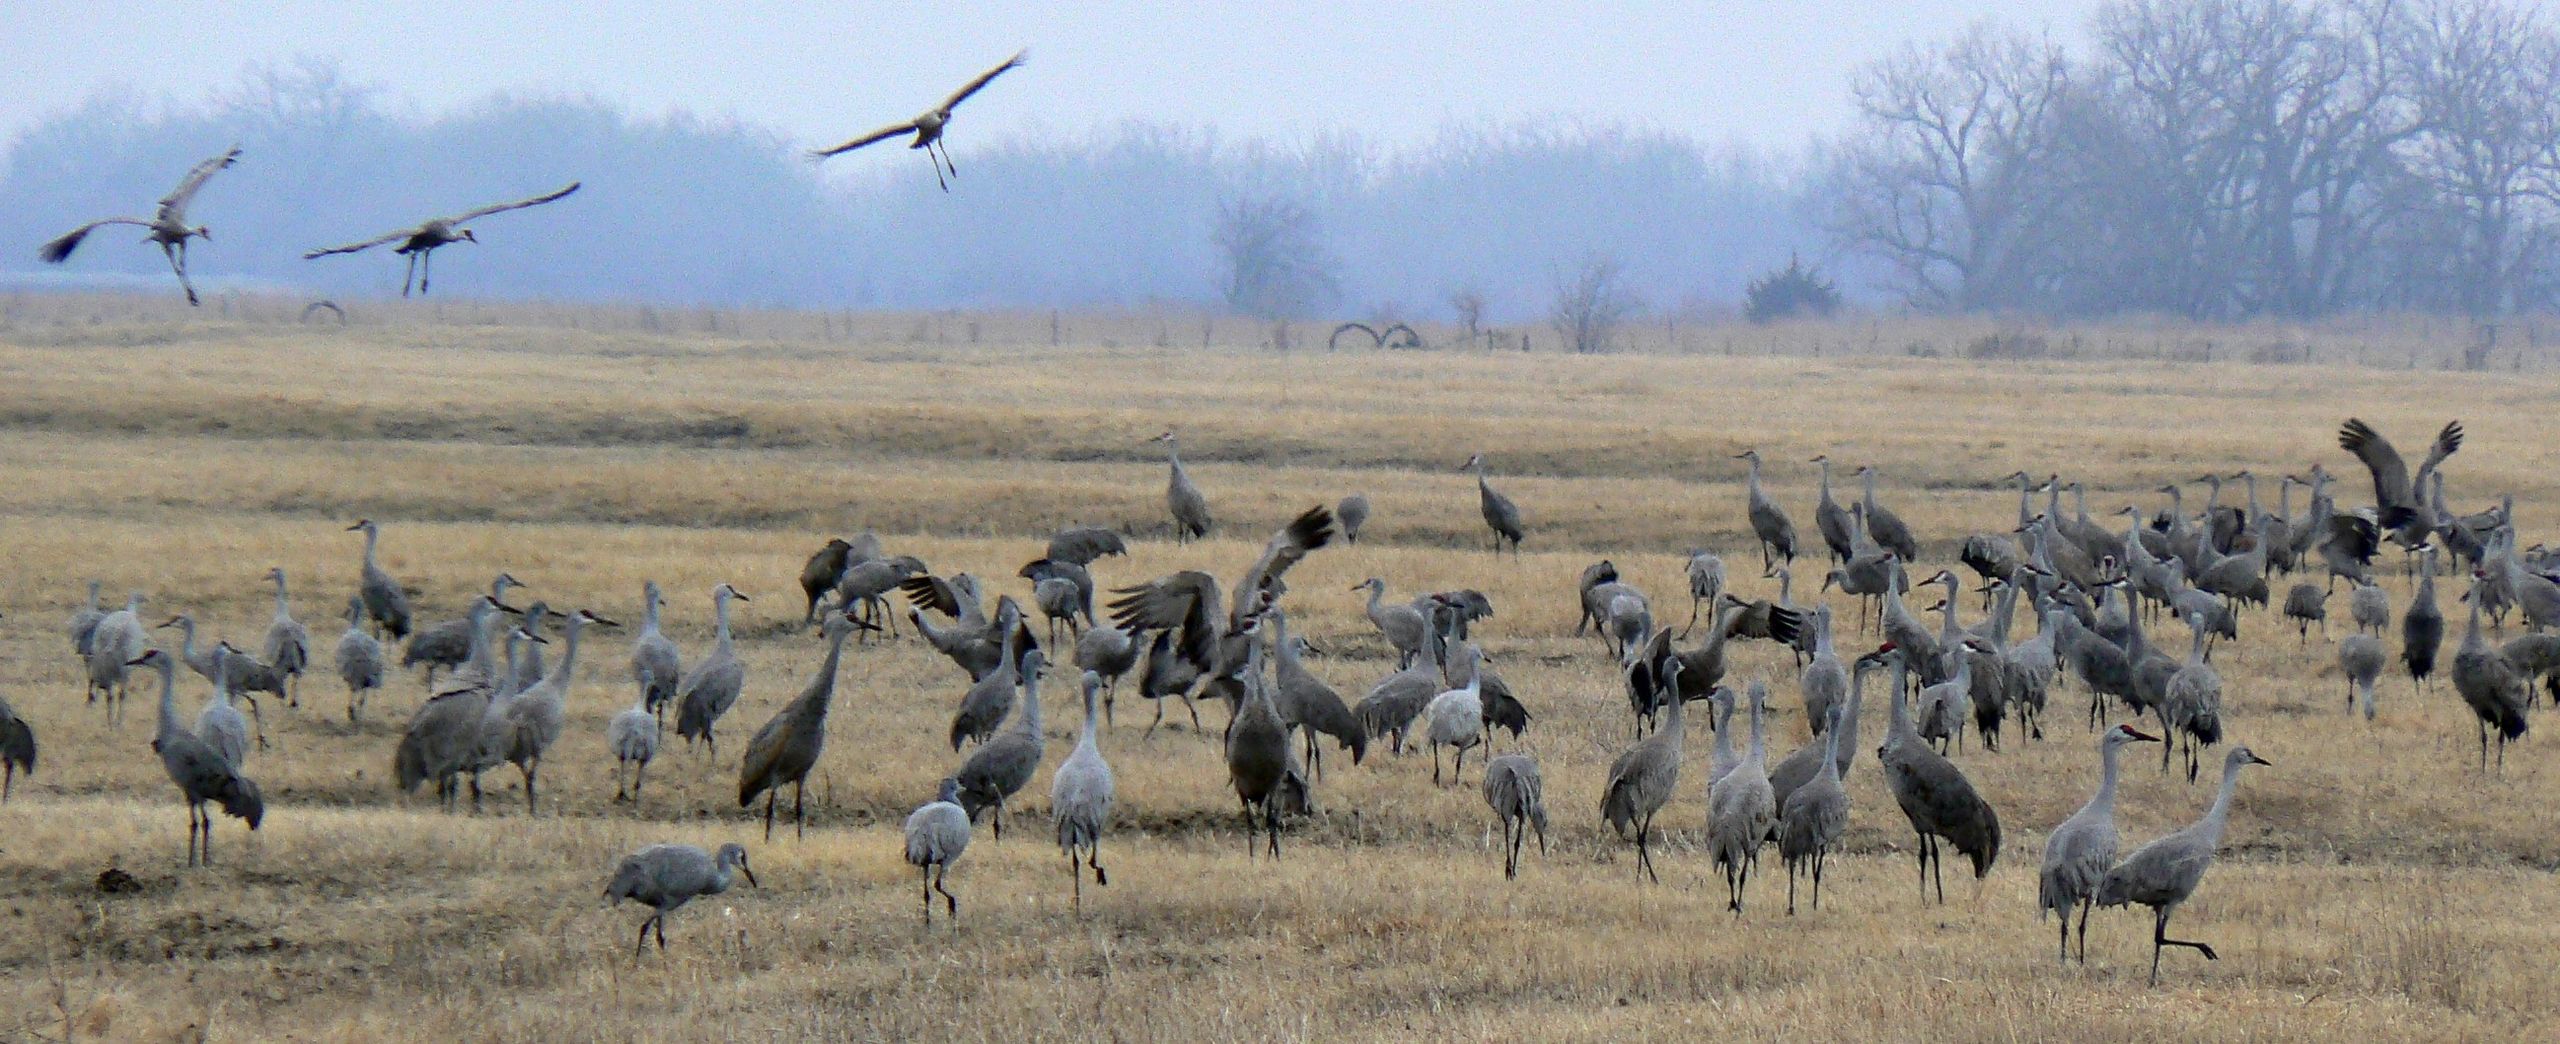 SandHill Crane Birds in North West Texas Field. 